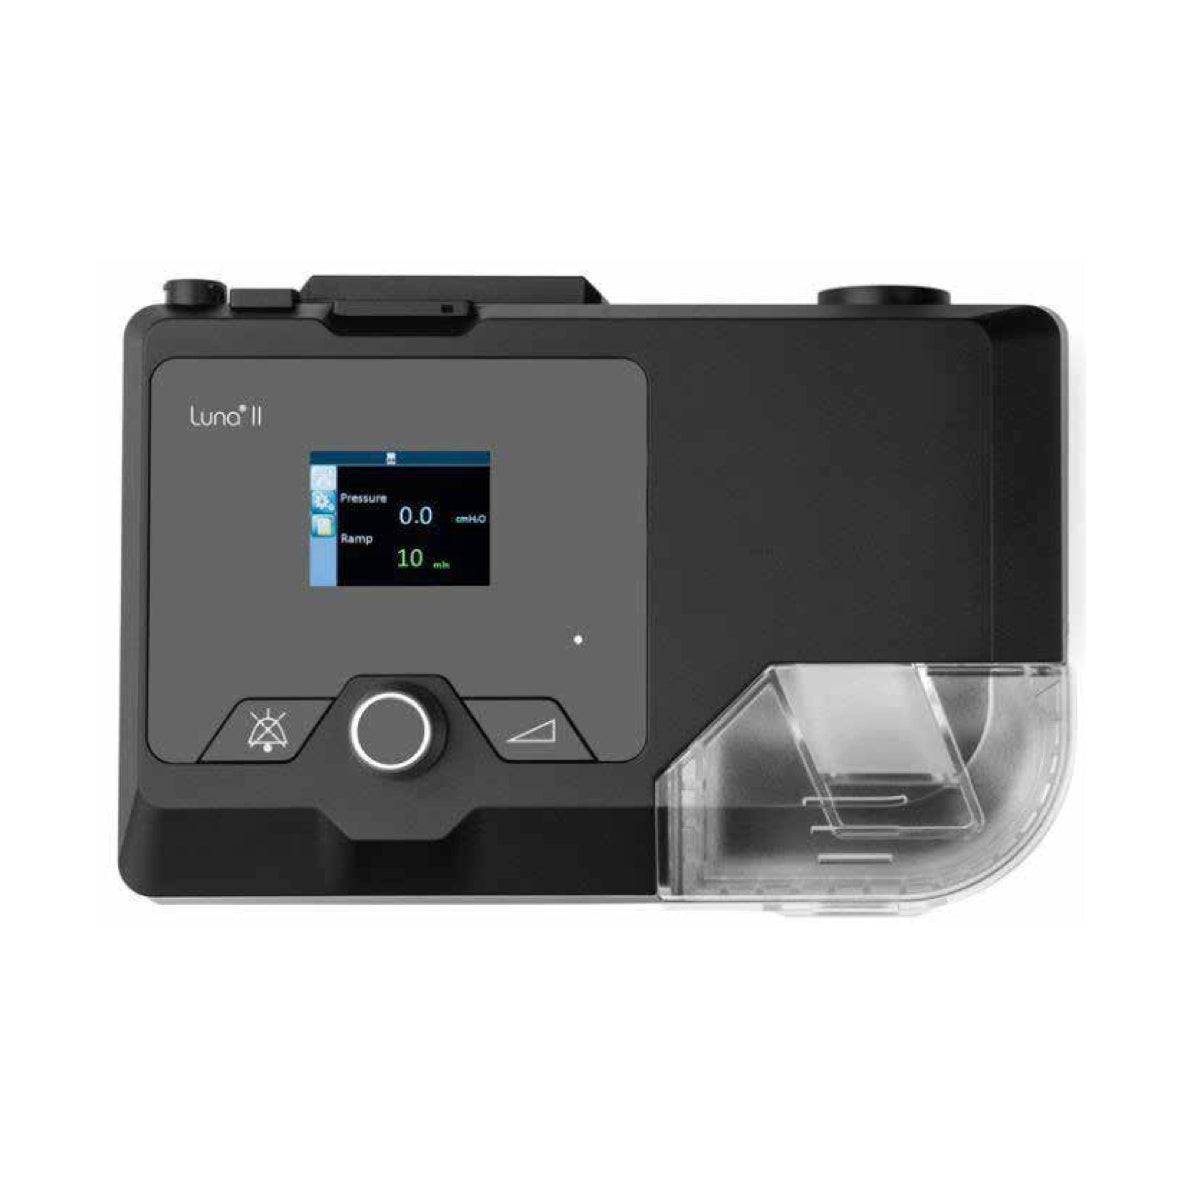 Luna II CPAP machine